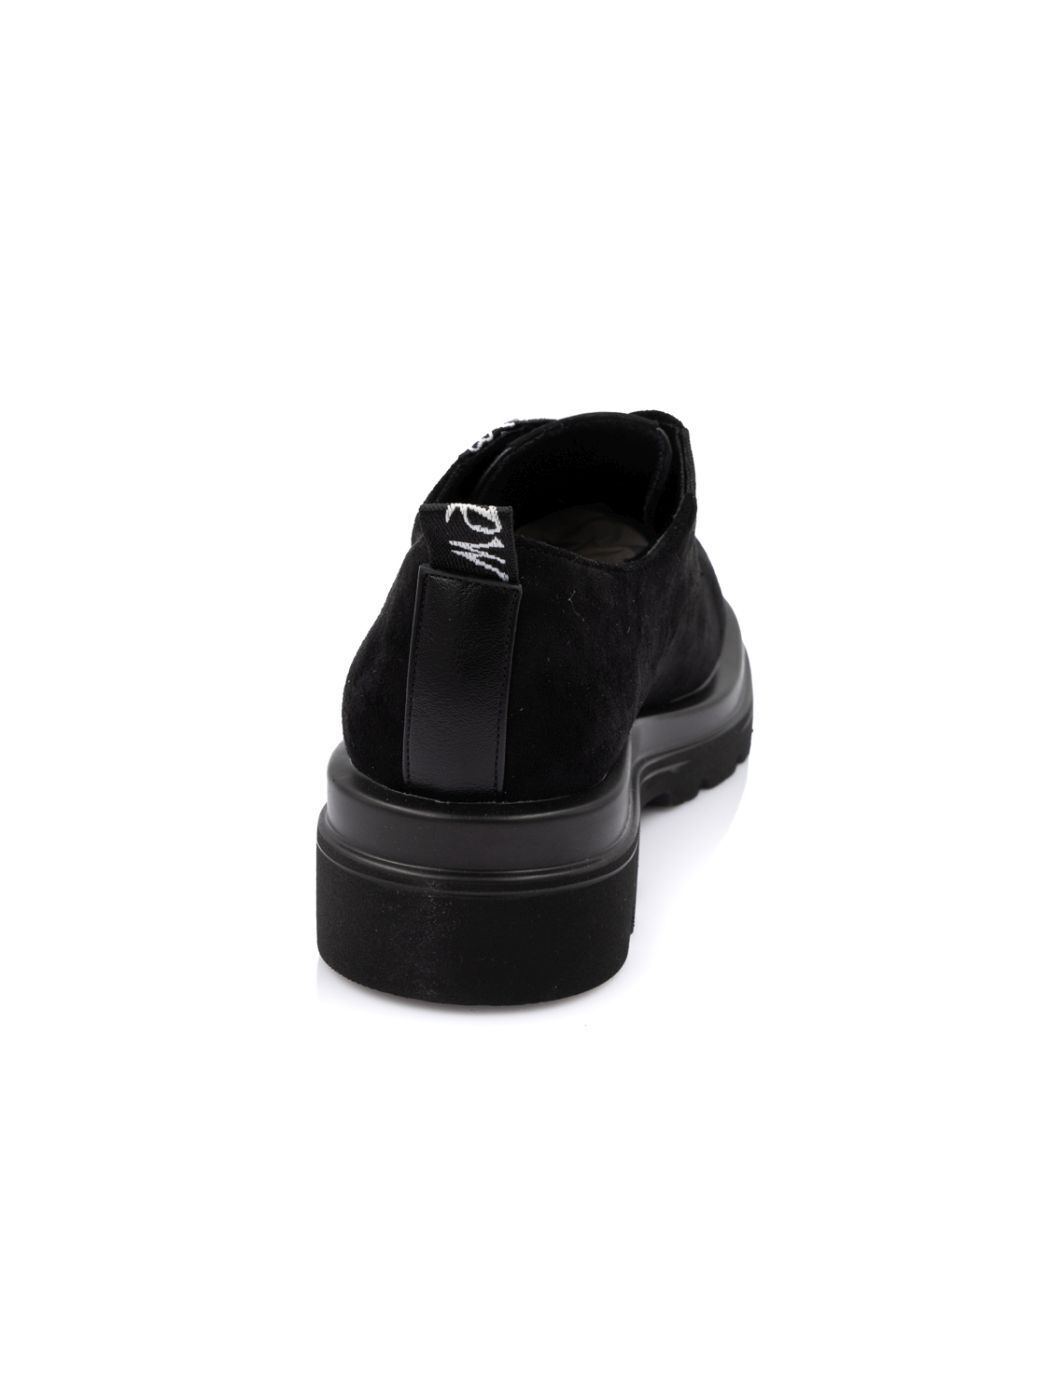 Туфли Oxfords женские черные экозамша демисезон от производителя 5M вид 1